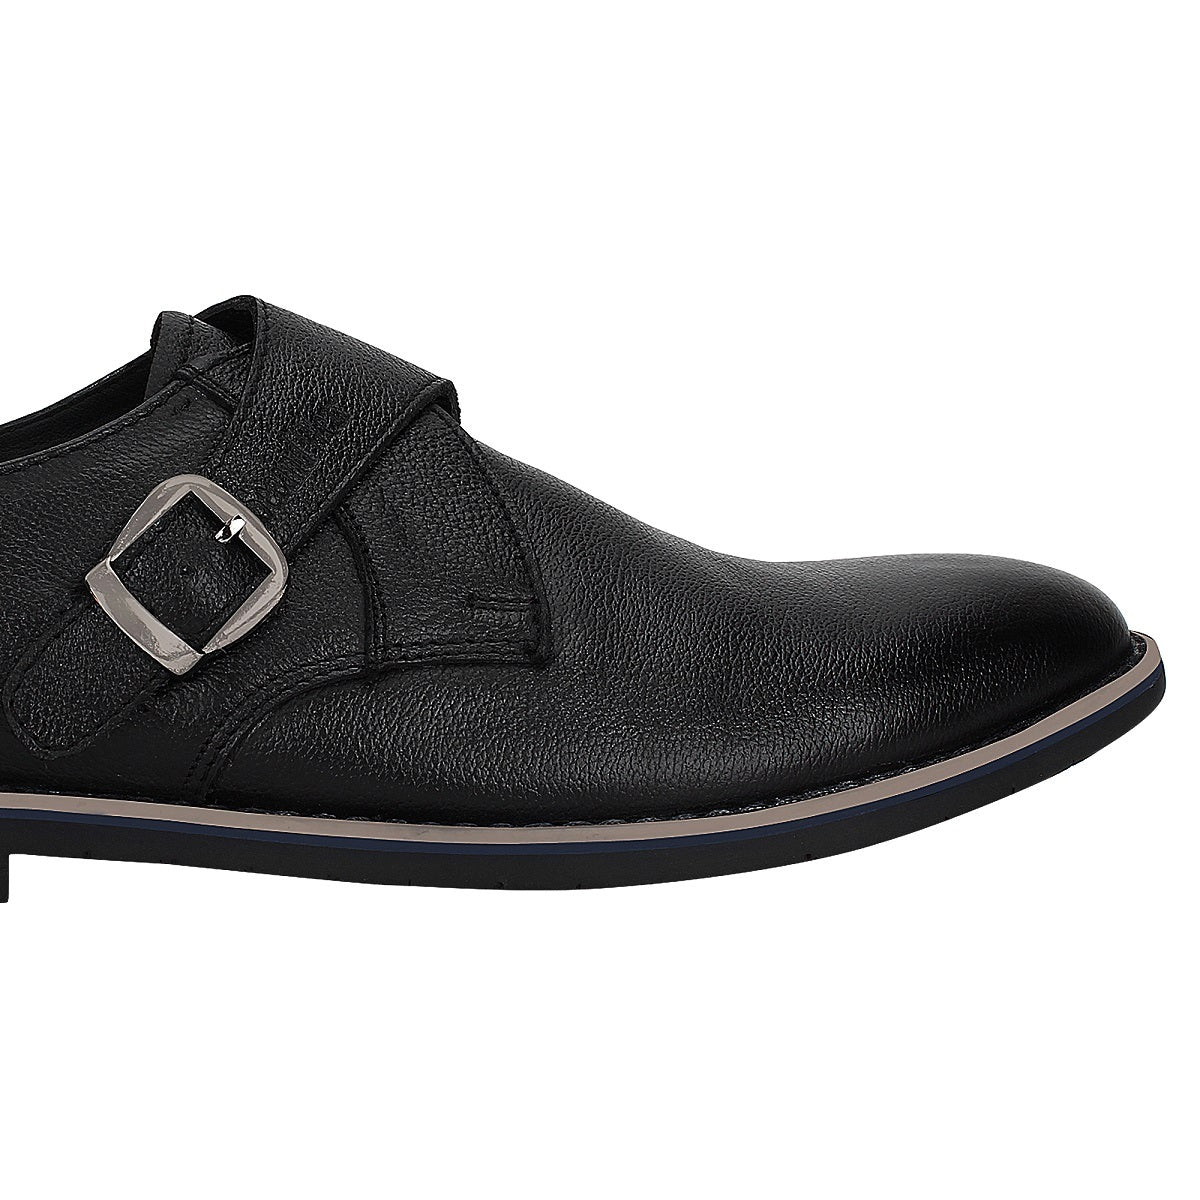 Monk Strap Shoes for Men - Defective